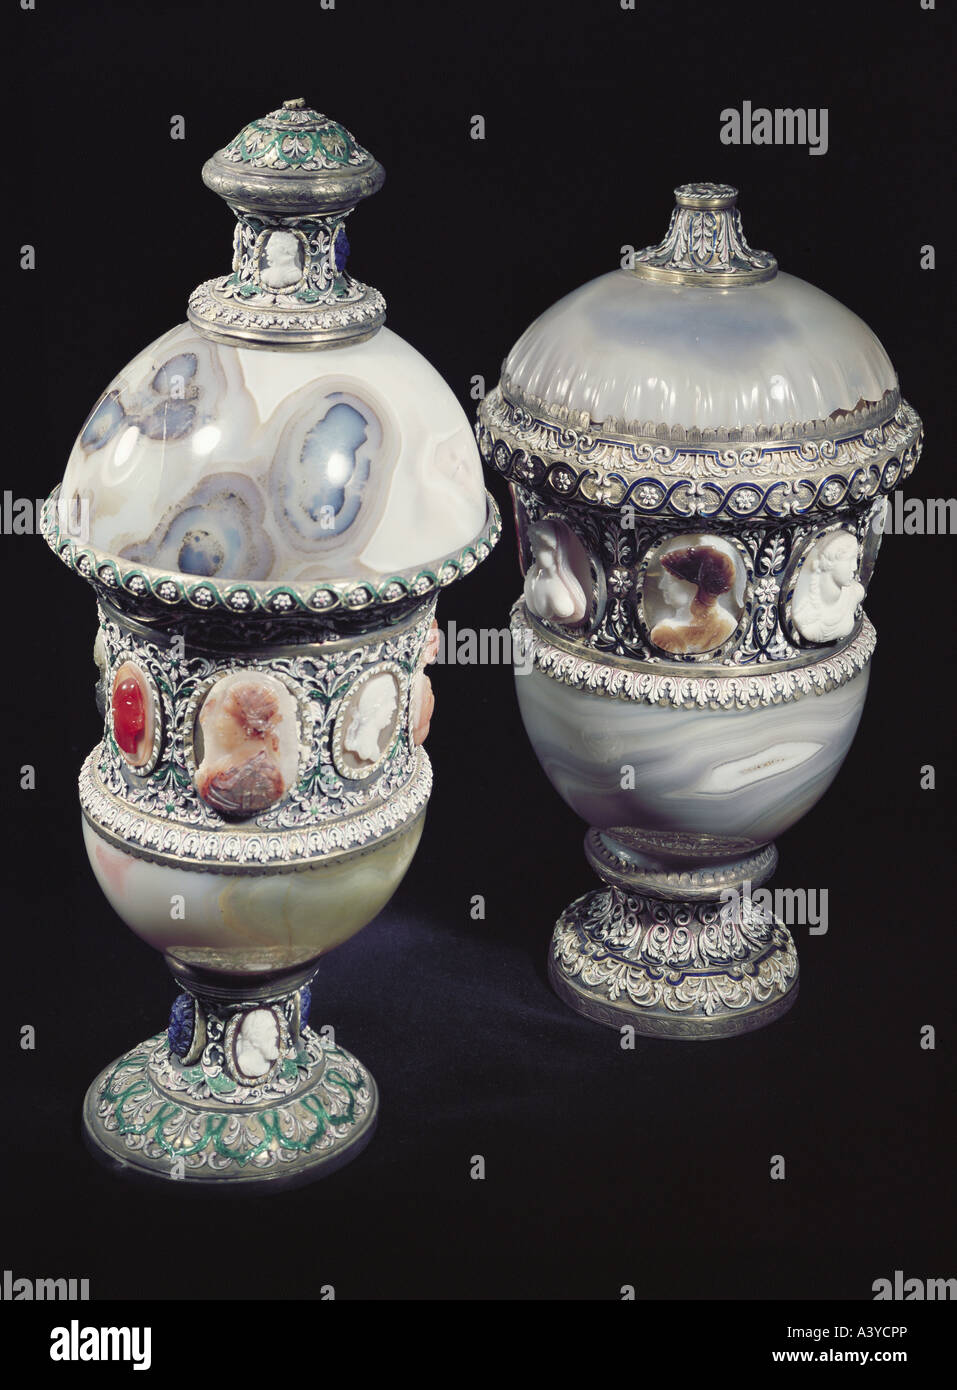 Belle arti, pezzo centrale, due vaso con cappuccio, XVI / xvii secolo, sinistra: calcedonio, argento, smalto, cammei, destra: argento dorato, Foto Stock